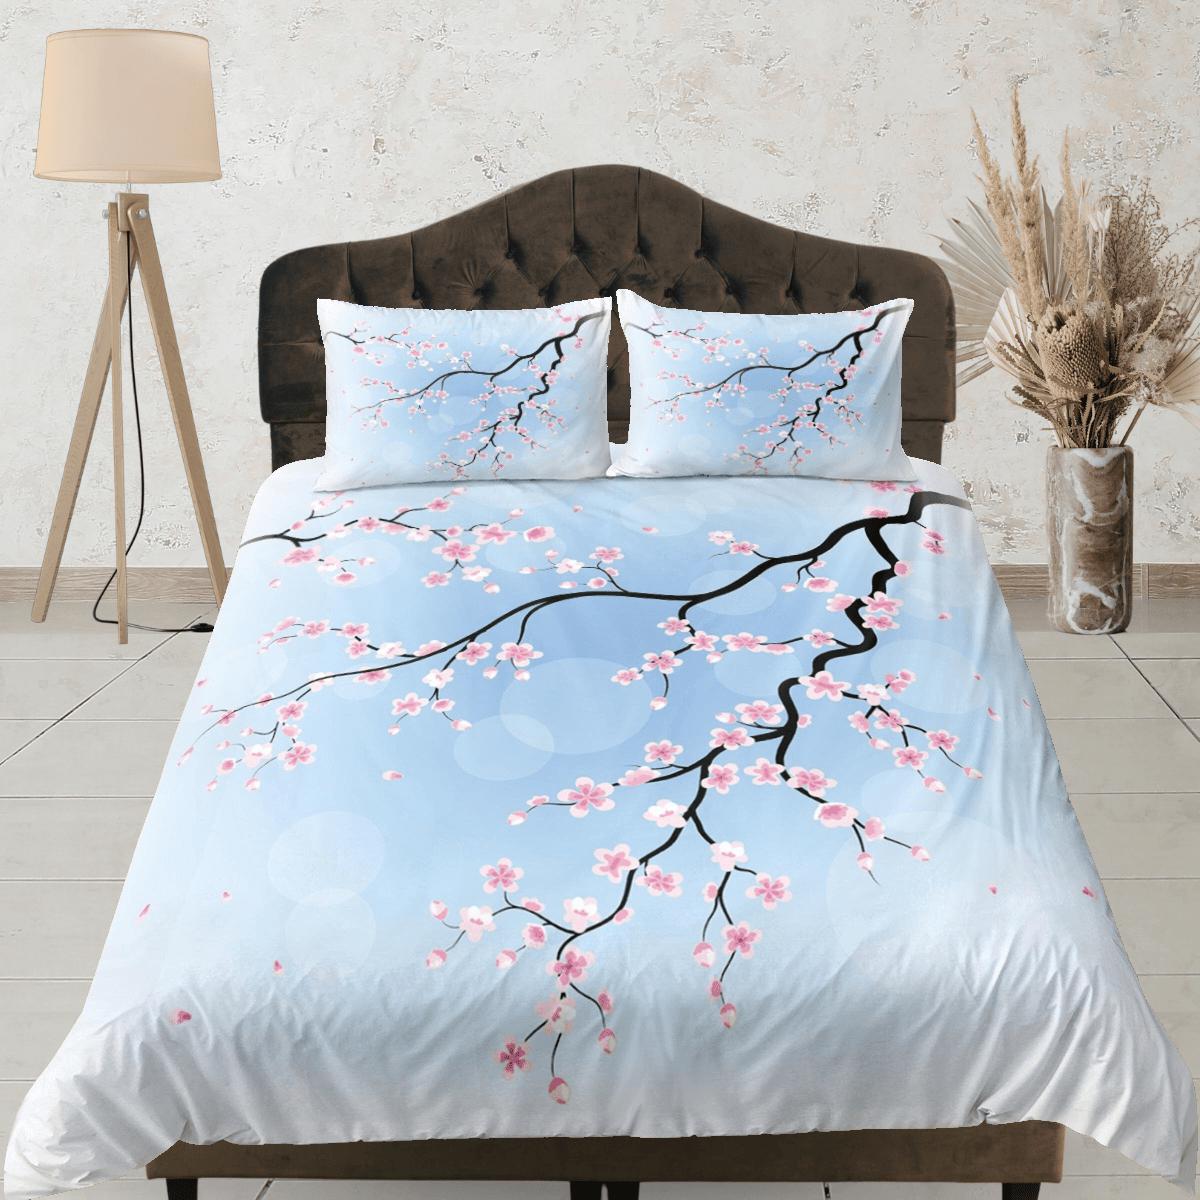 daintyduvet Cherry blossom light blue bedding floral prints duvet cover queen, king, boho bedding designer bedspread full size bedding aesthetic